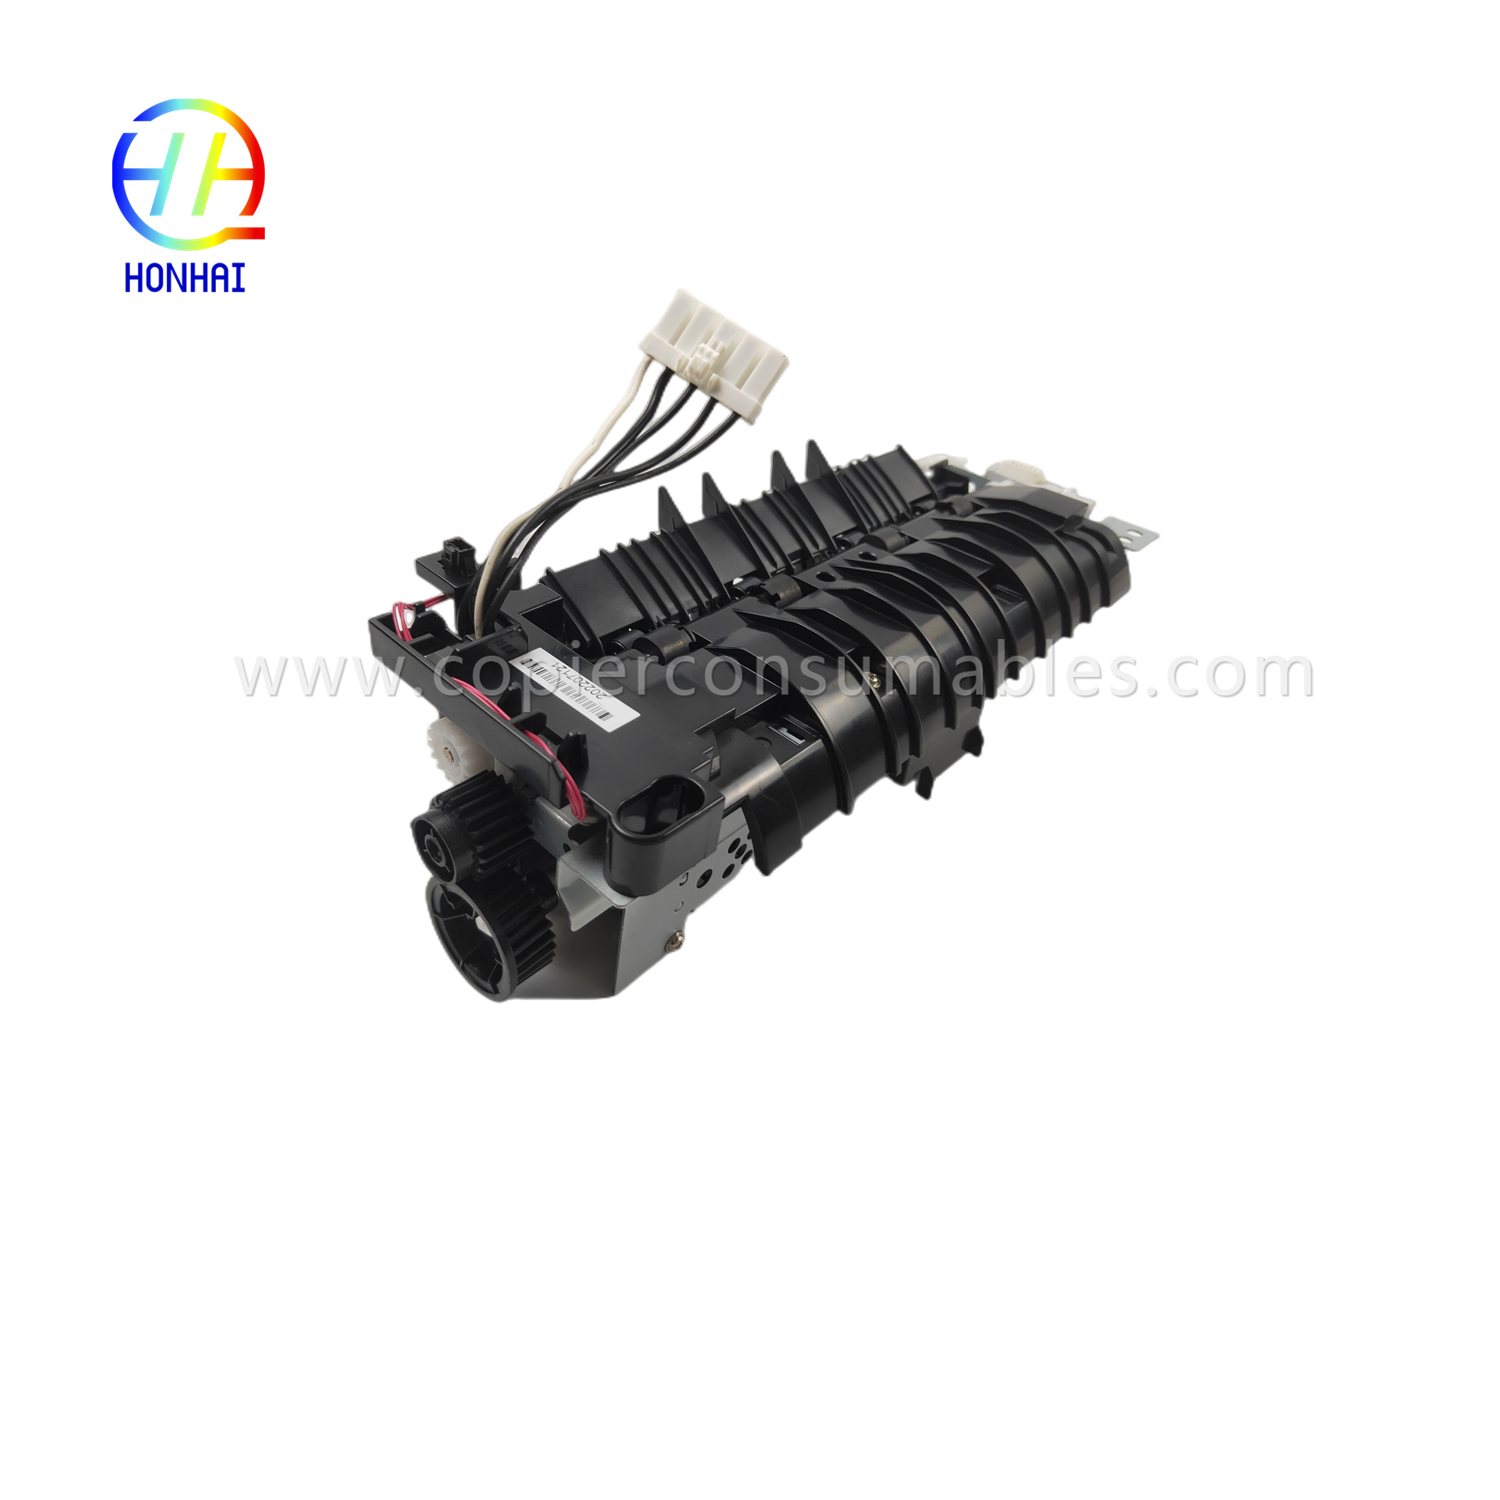 https://www.copierhonhaitech.com/fuser-assemble-220v-japan-for-hp-521-525-m521-m525-rm1-8508-rm1-8508-000-fuser-unit-2-product/